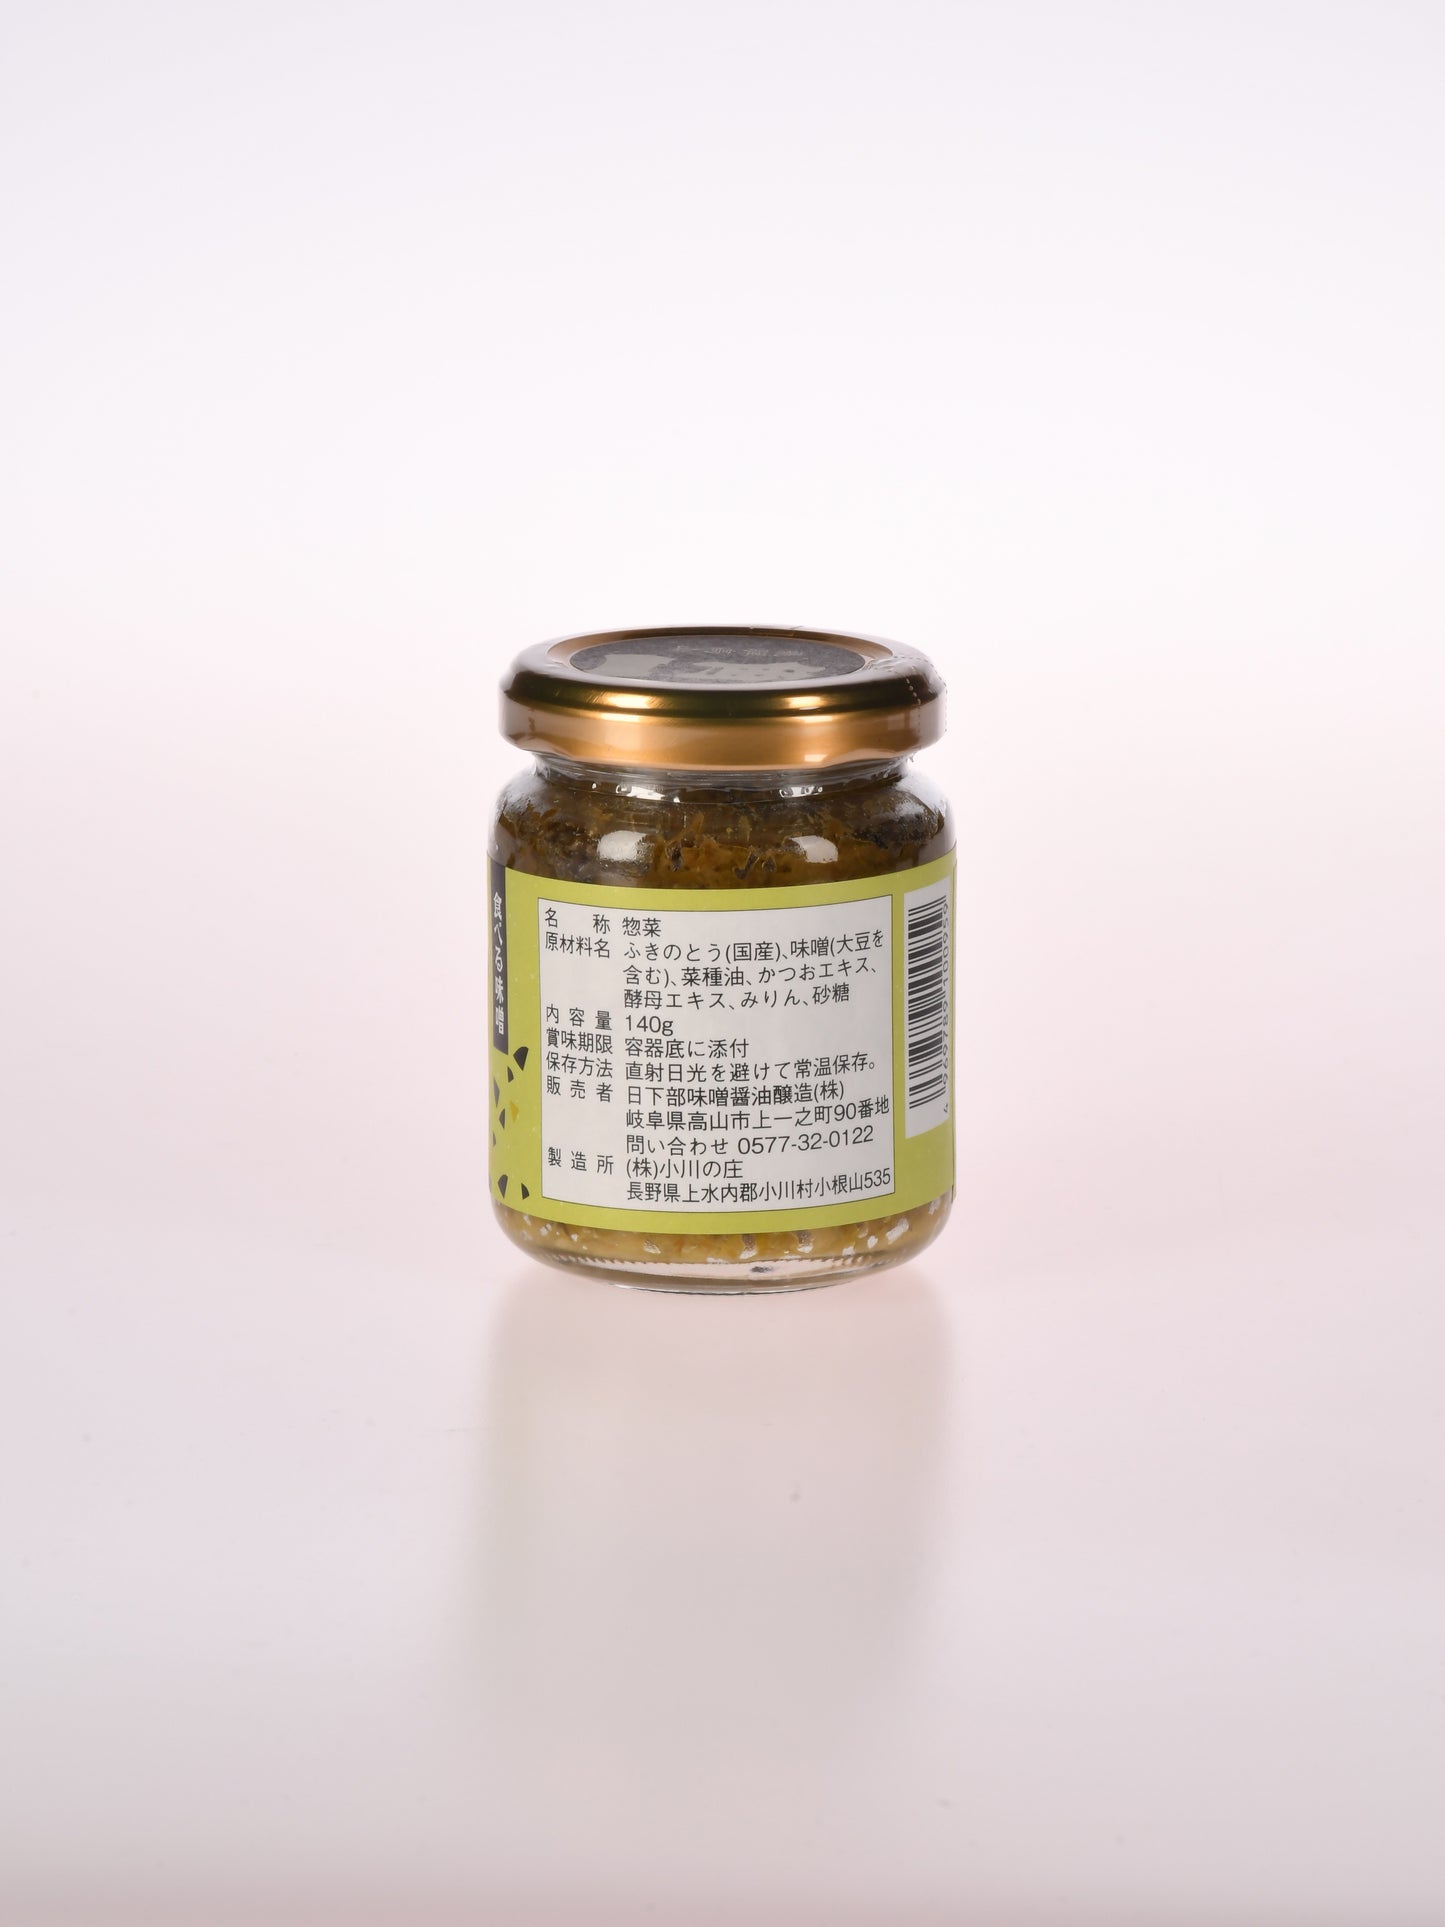 ふき味噌(140g)